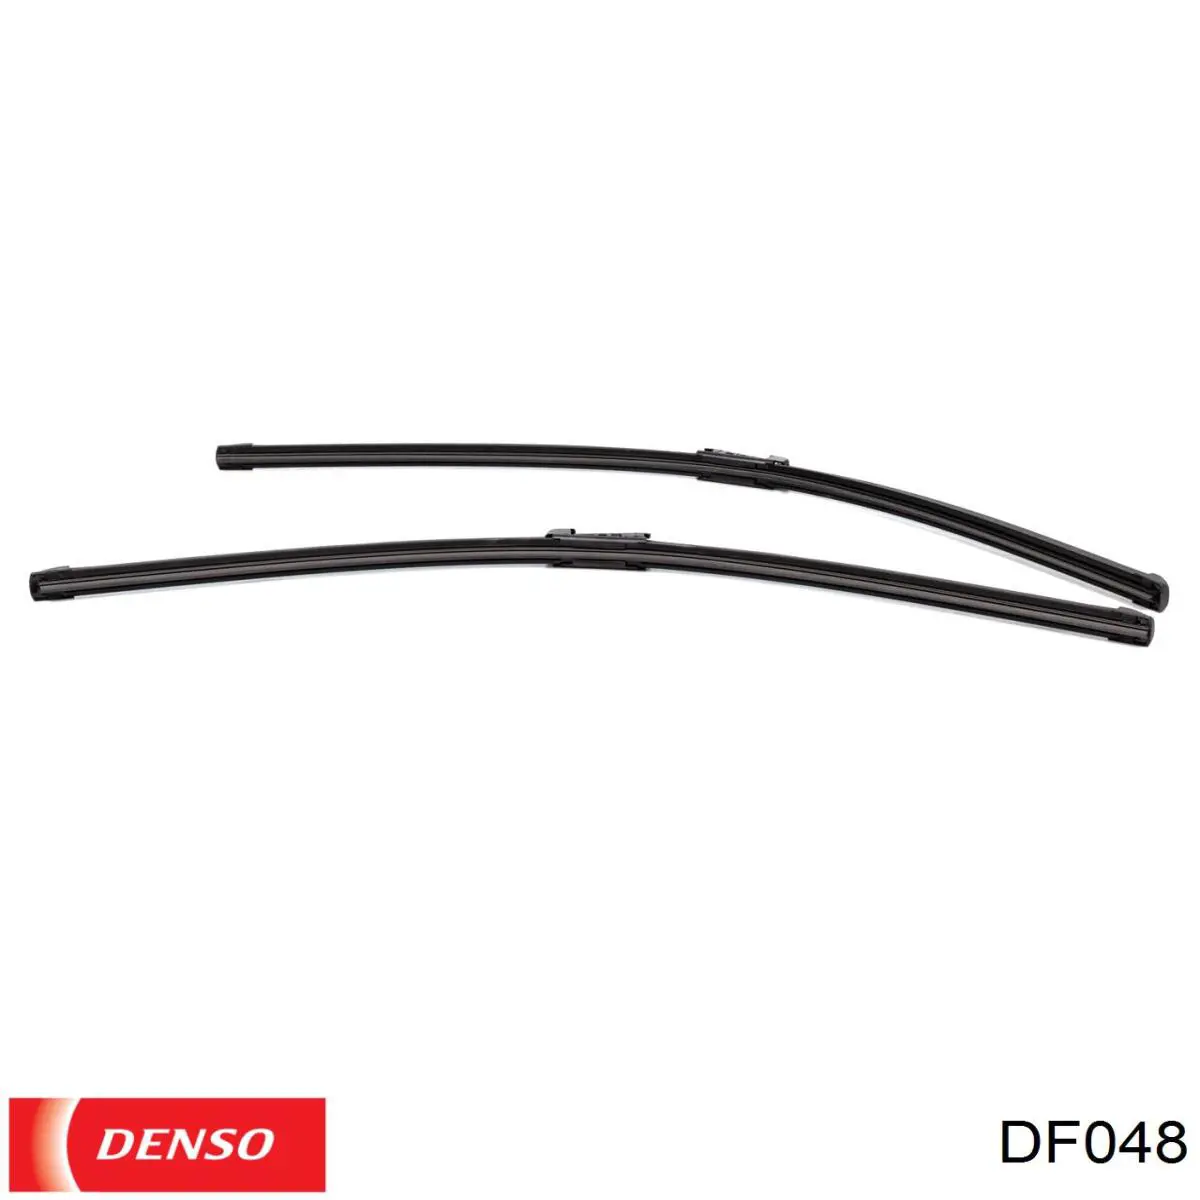 DF048 Denso щетка-дворник лобового стекла, комплект из 2 шт.